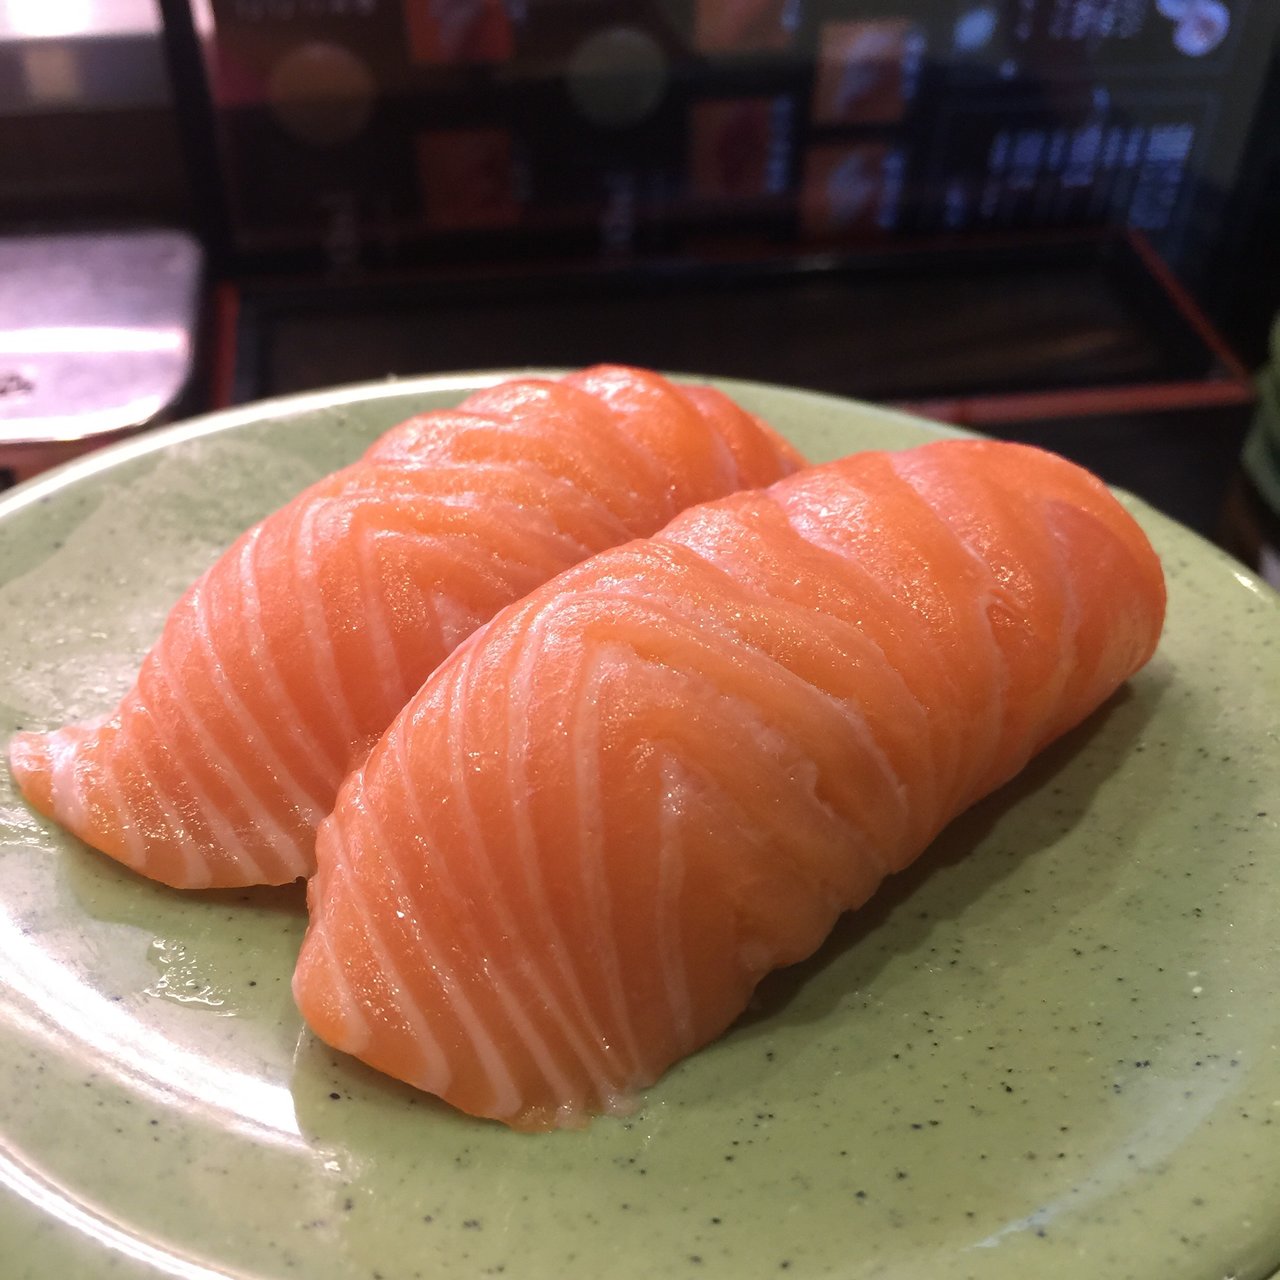 庄 寿司 亀 とにかくウマイと評判の寿司屋「亀正」で極上寿司をたらふく食べよう